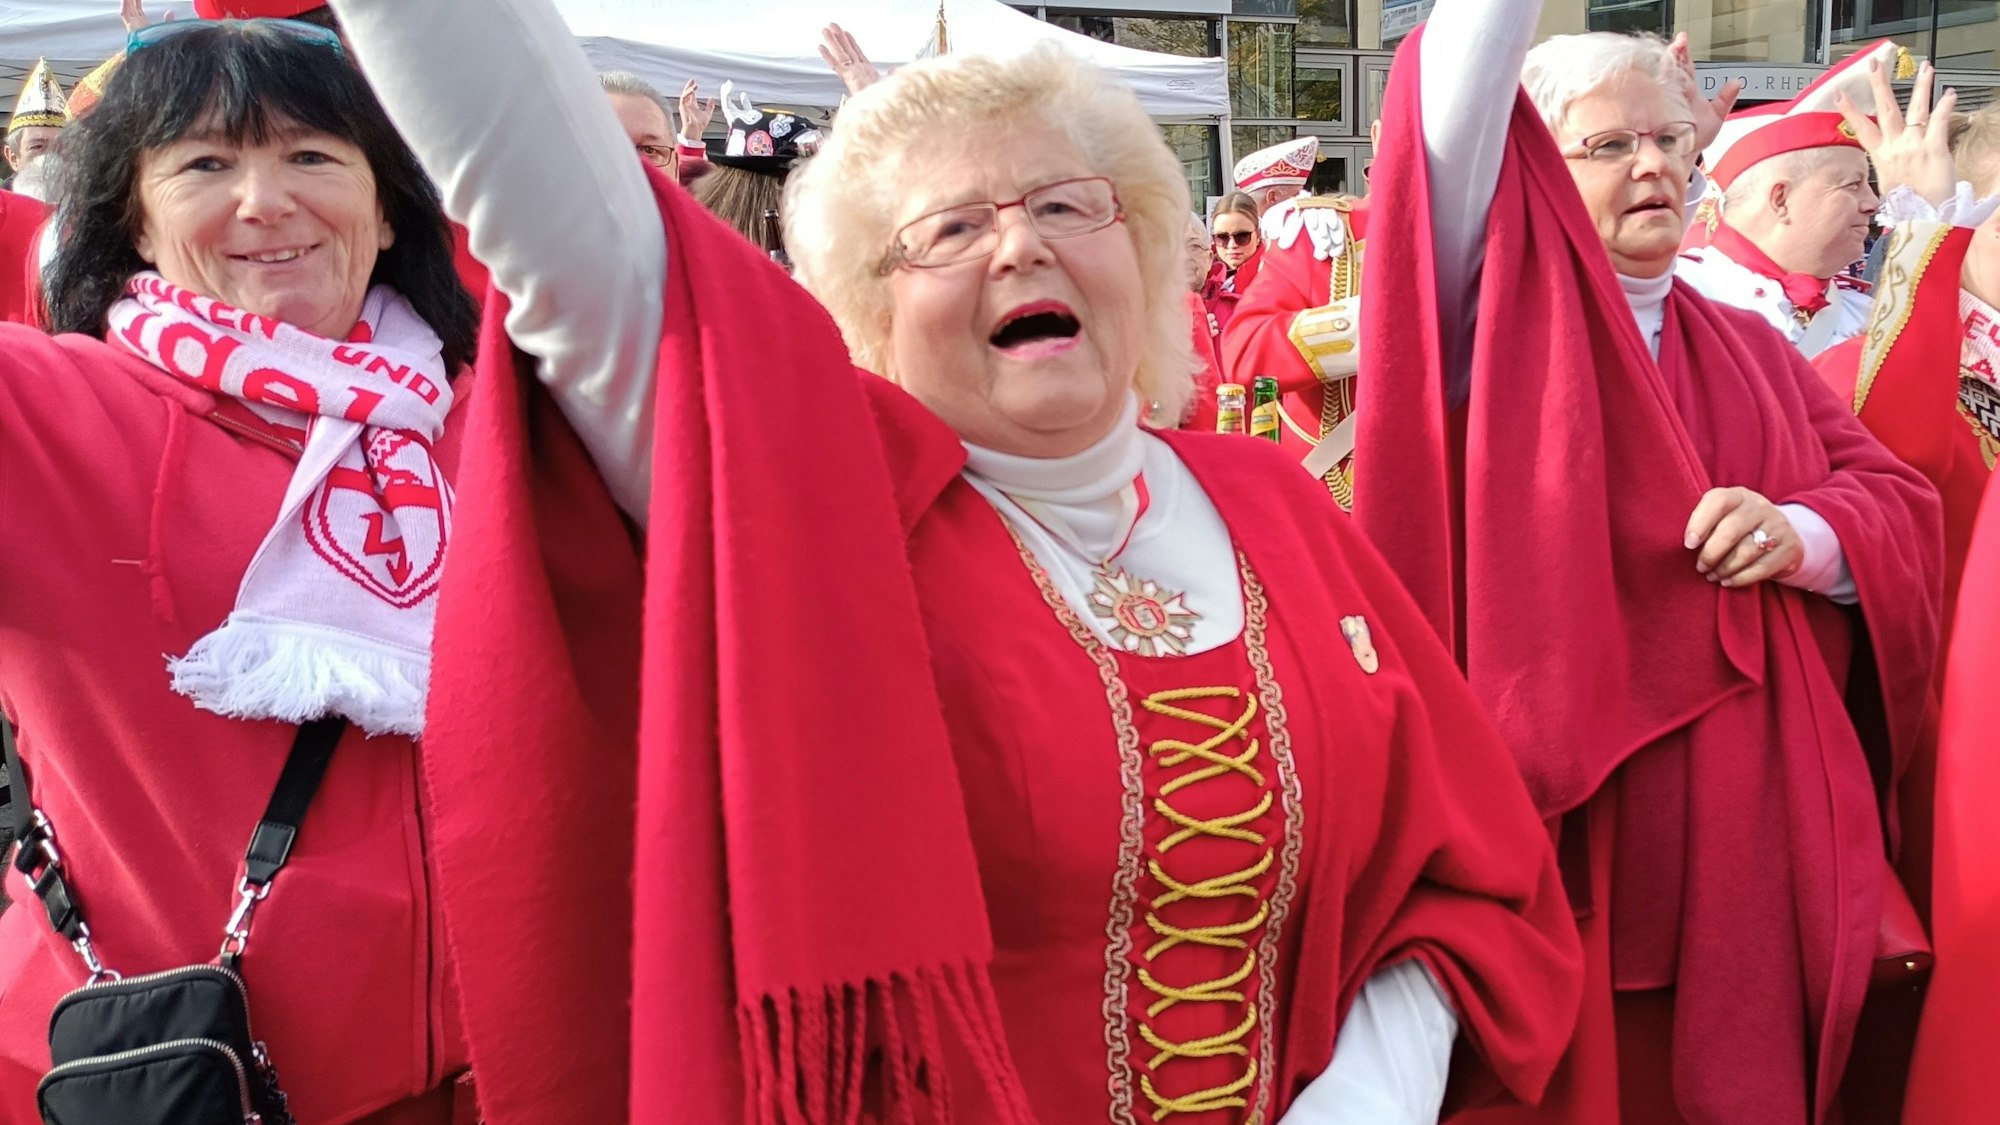 Karnevalistinnen jubeln und feiern in roter Kleidung den Sessionsauftakt in Bergheim.